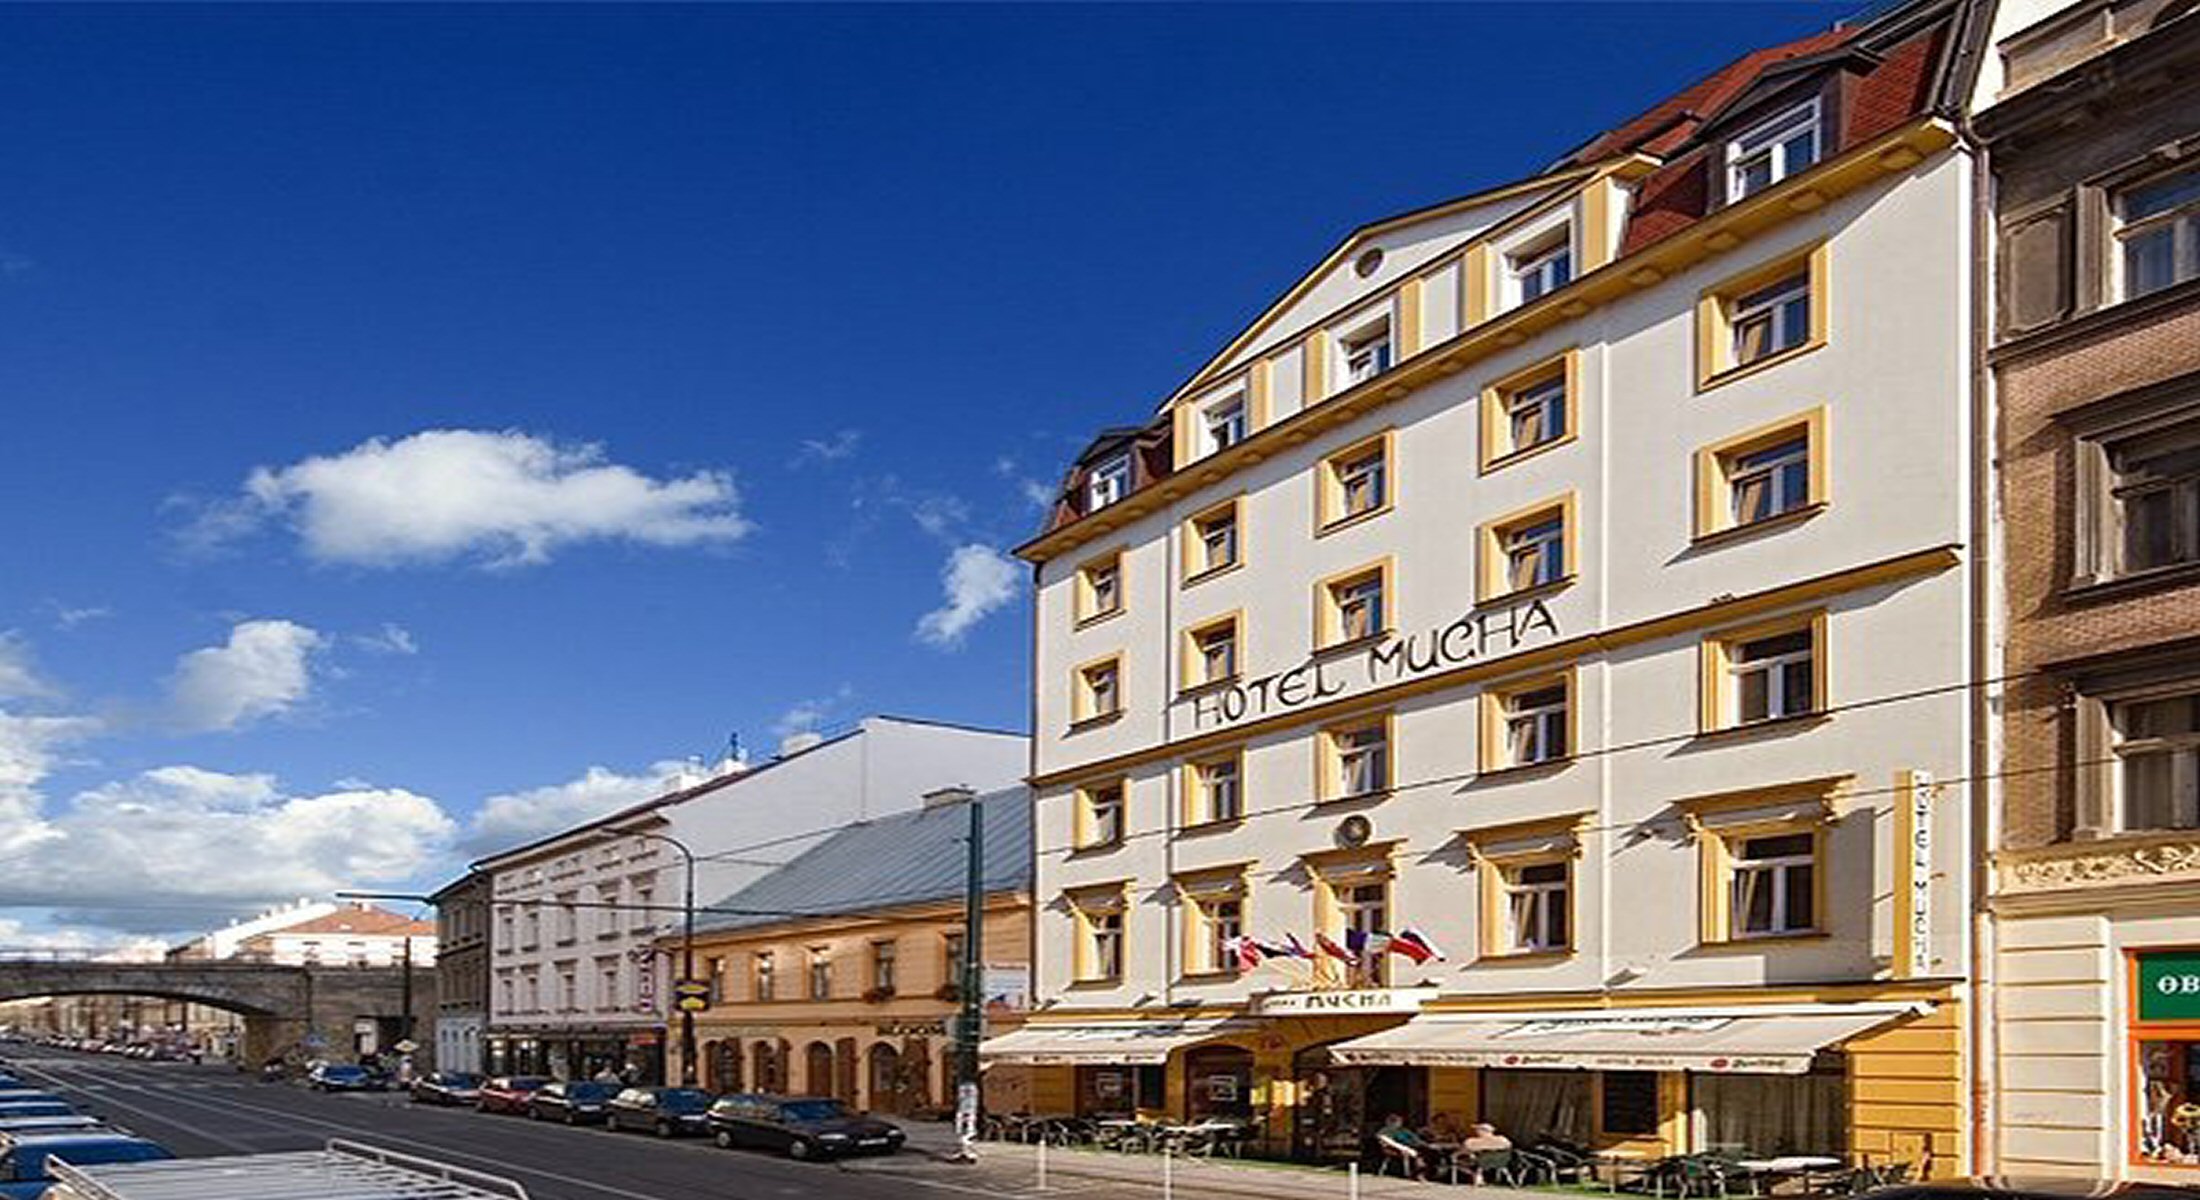 Hotelu Mucha Praha 11